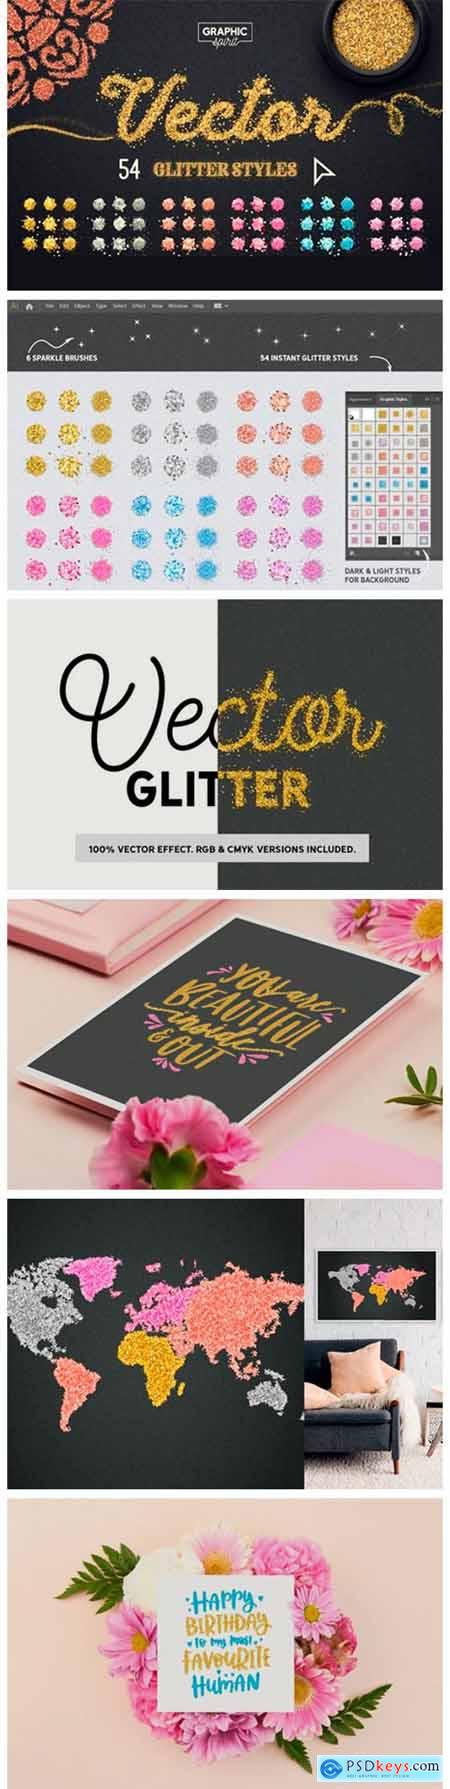 Vector Glitter for Adobe Illustrator 19090540